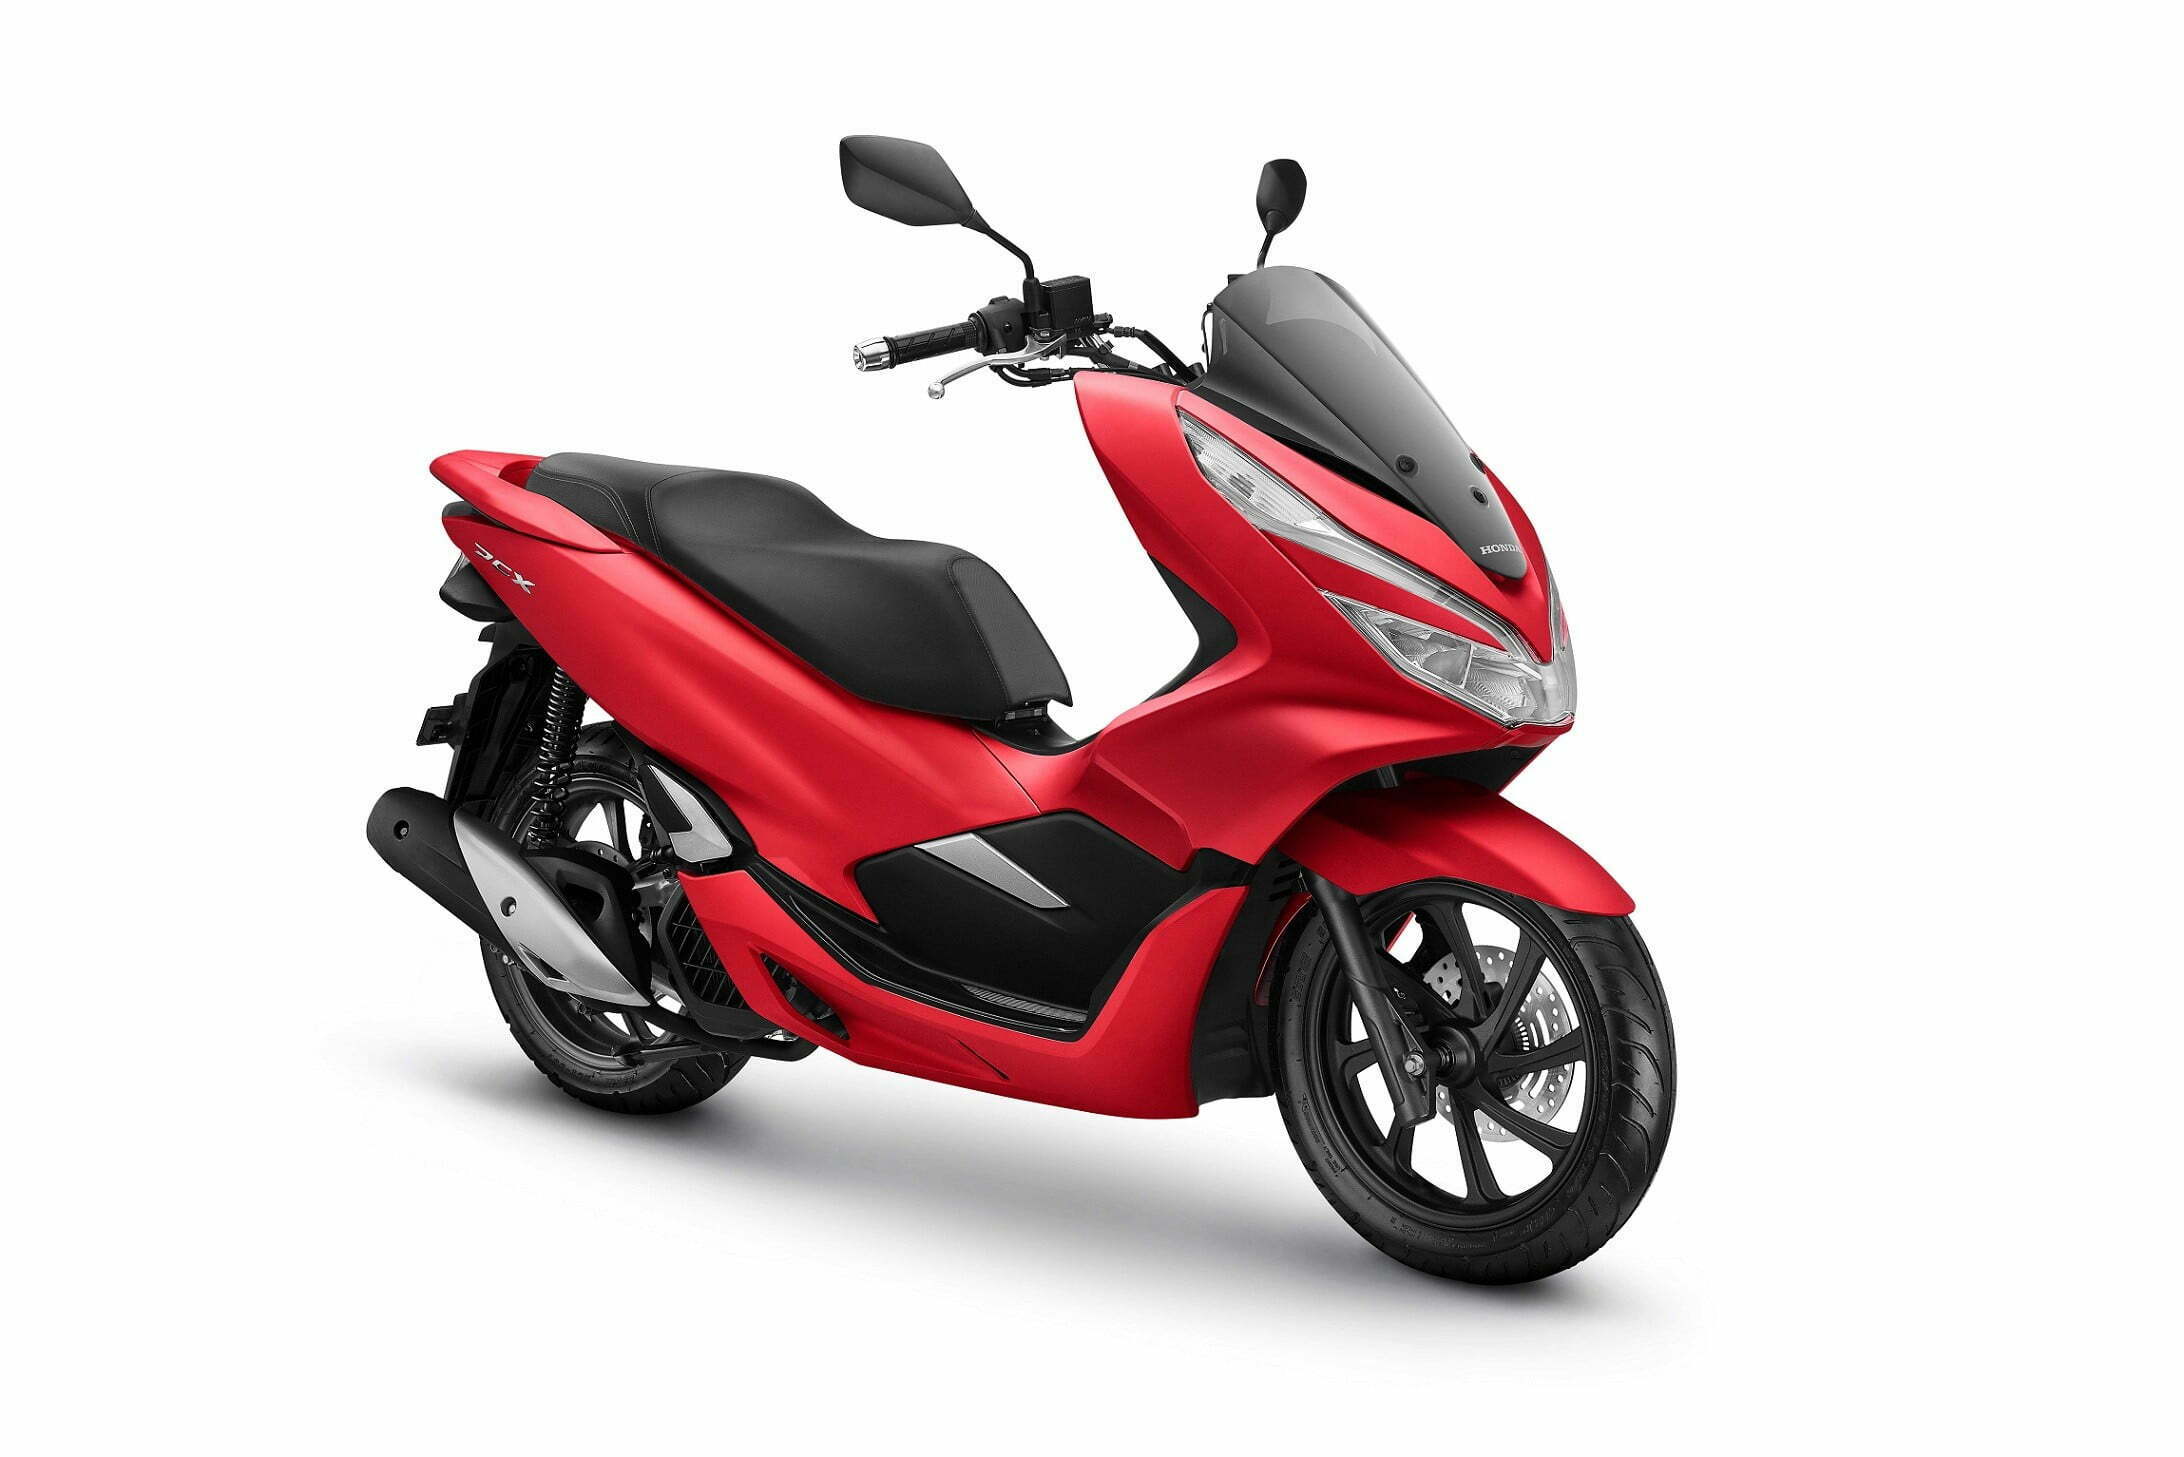 Daftar Harga Motor Honda Terbaru - Mataram Lombok 